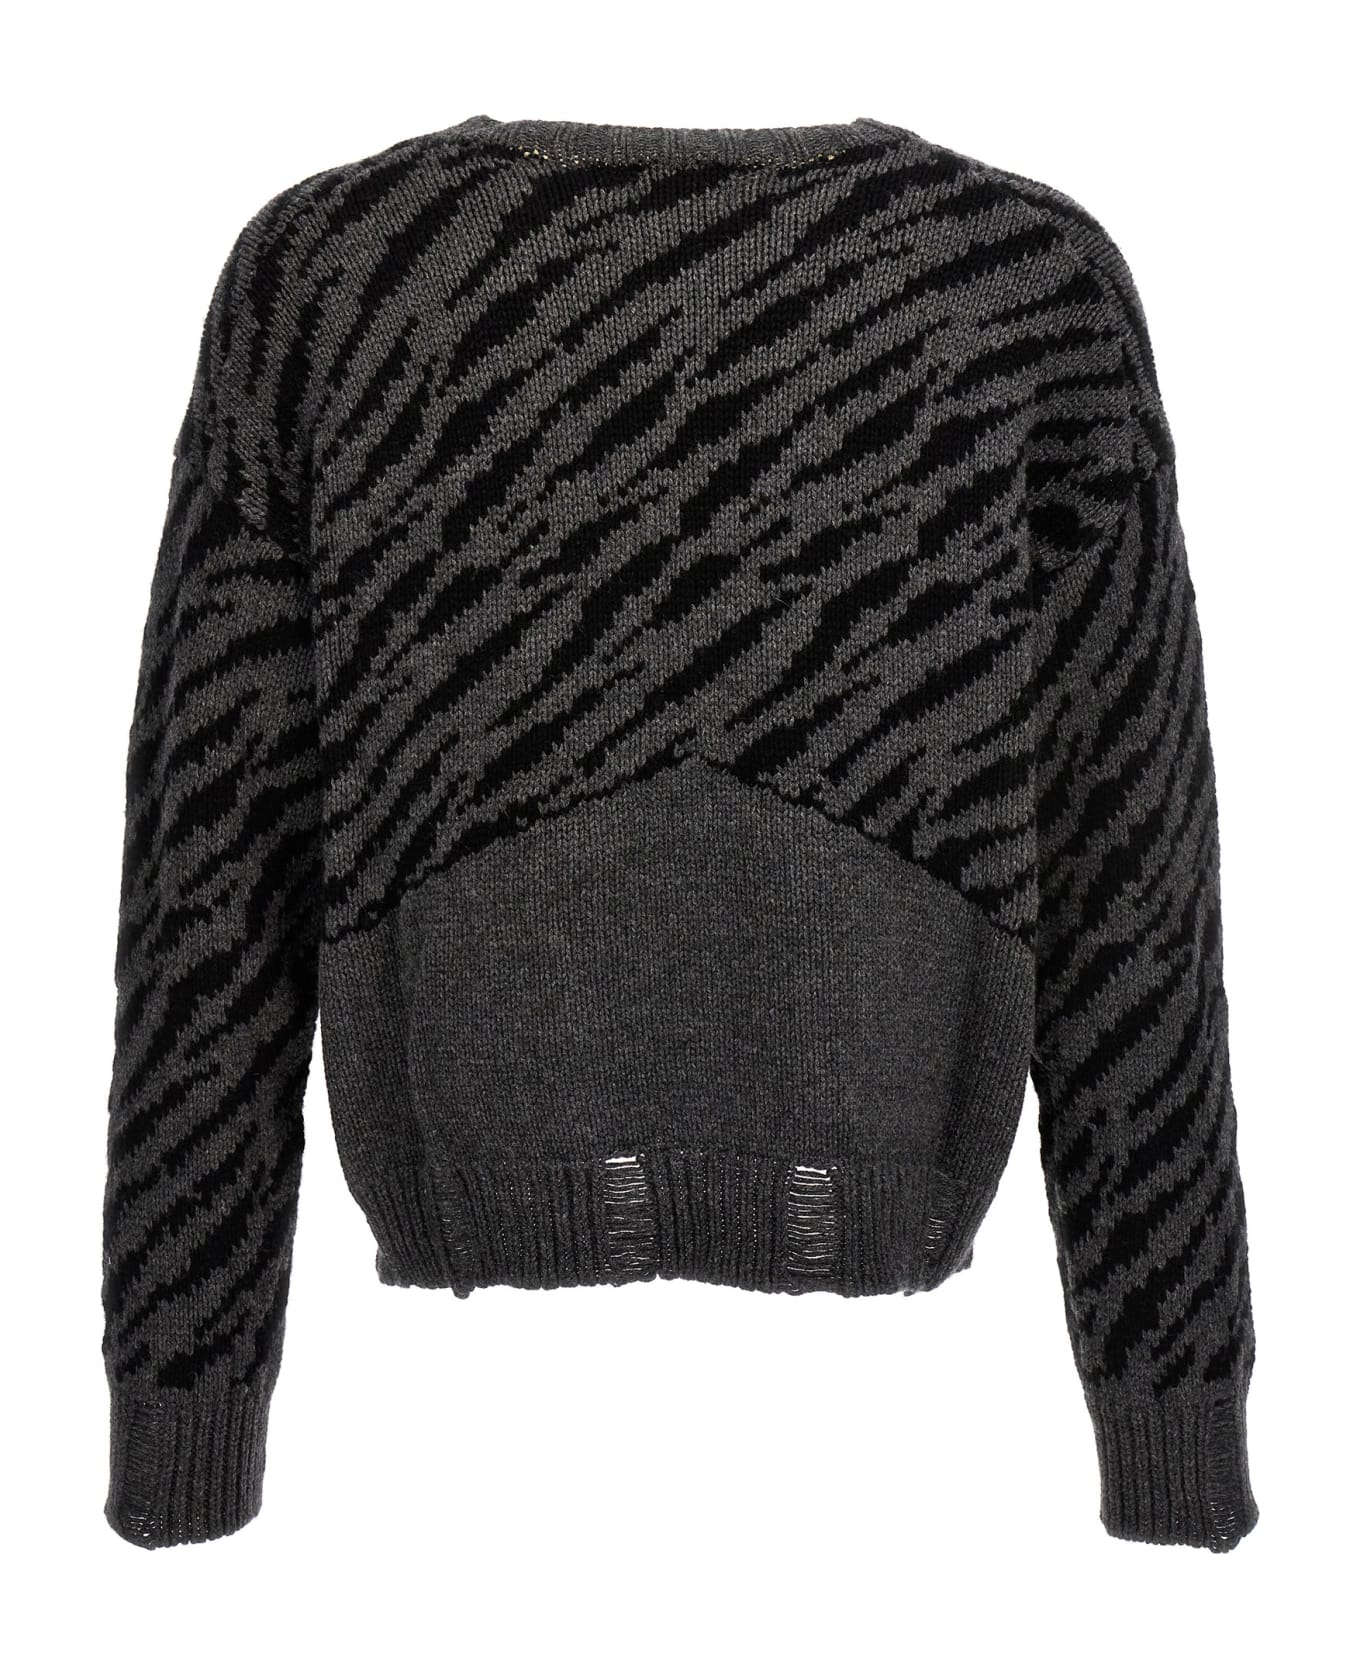 Rhude 'zebra' Sweater - Black